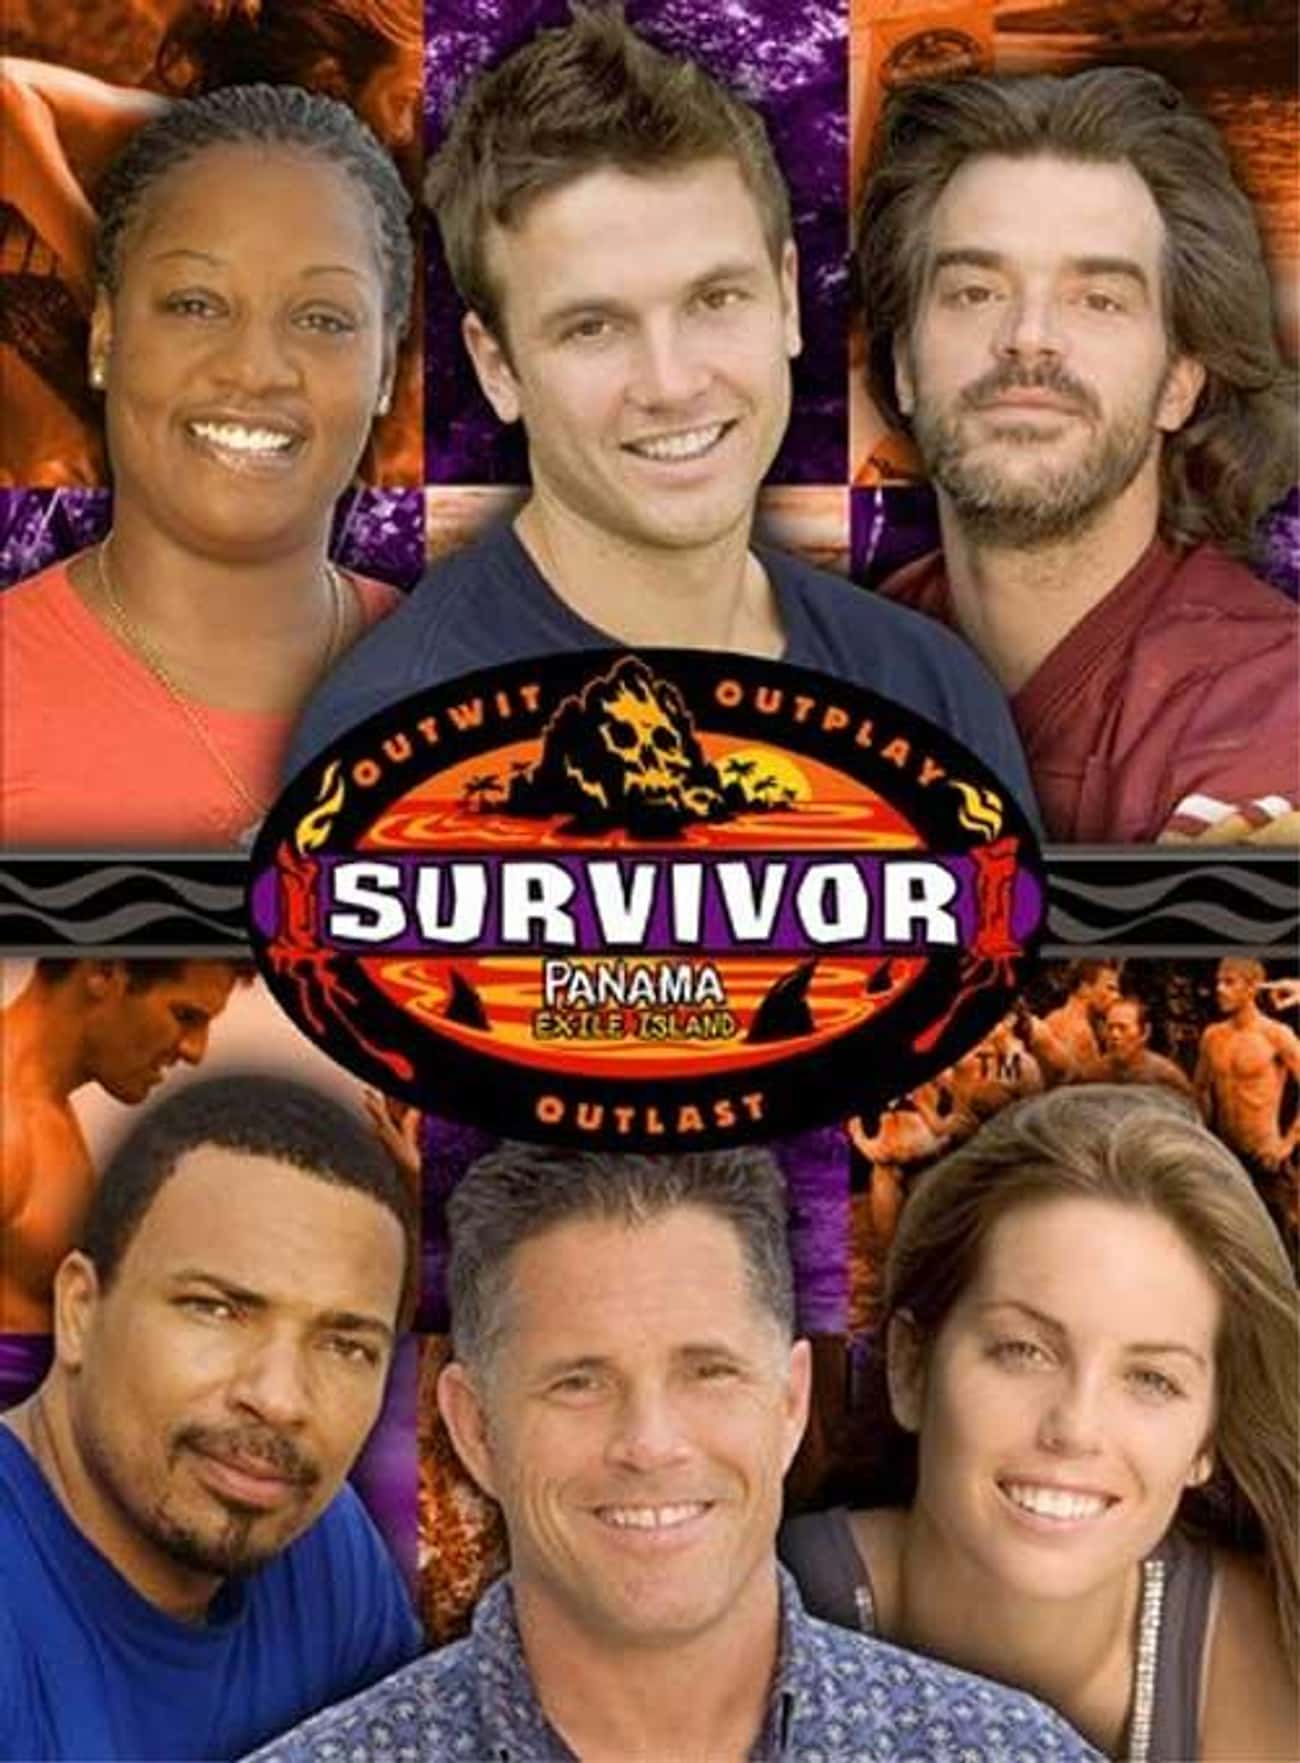 Survivor: Panama, Exile Island - Season 12